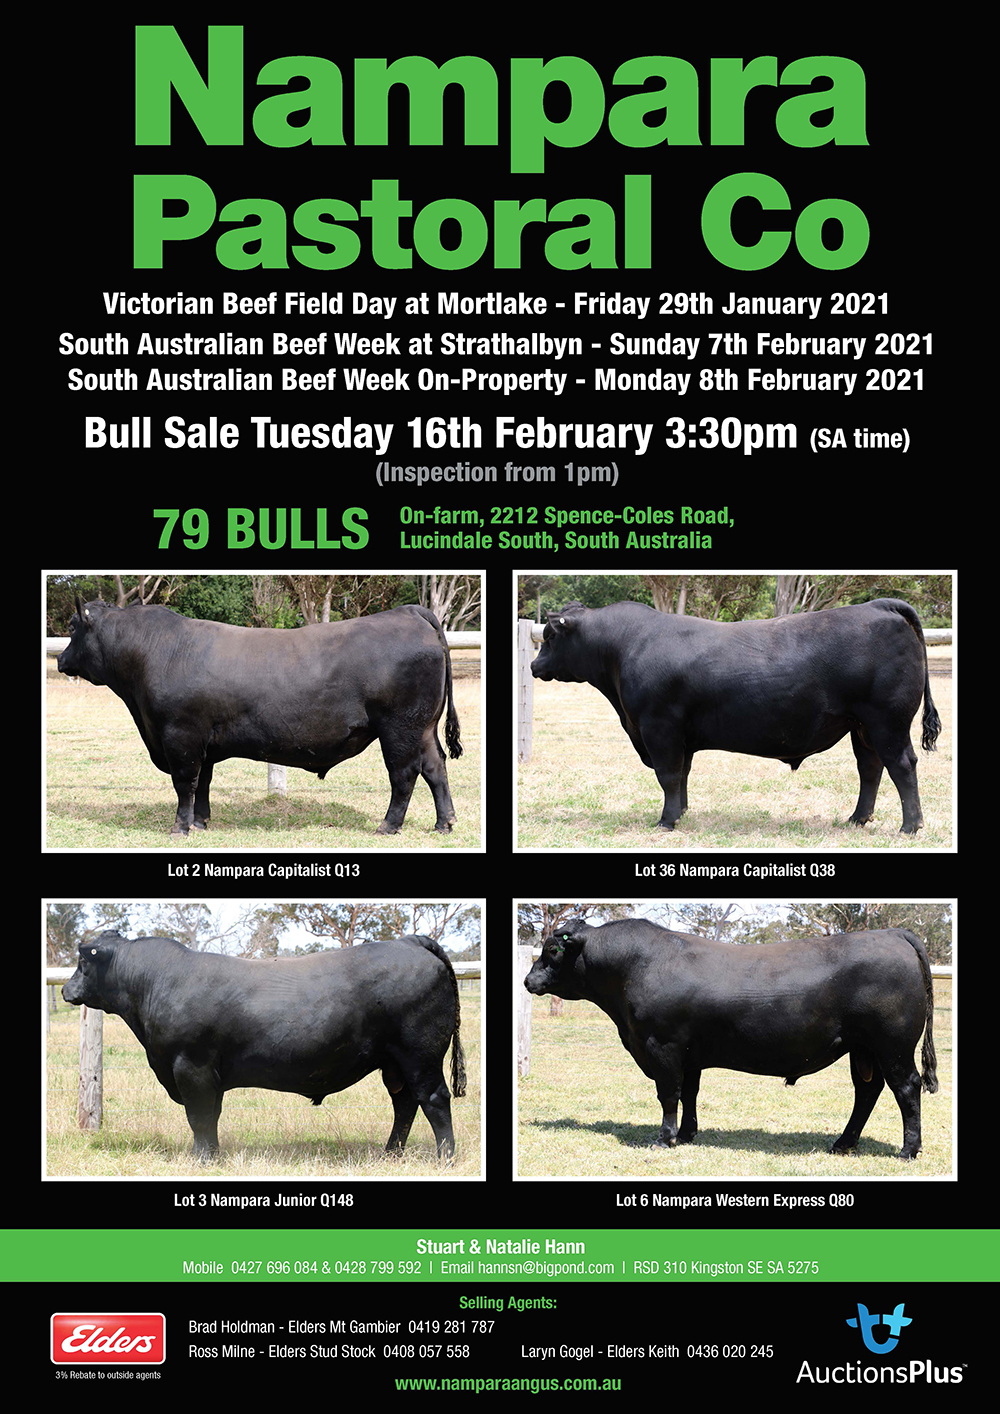 Nampara Pastoral Co Bull Sale